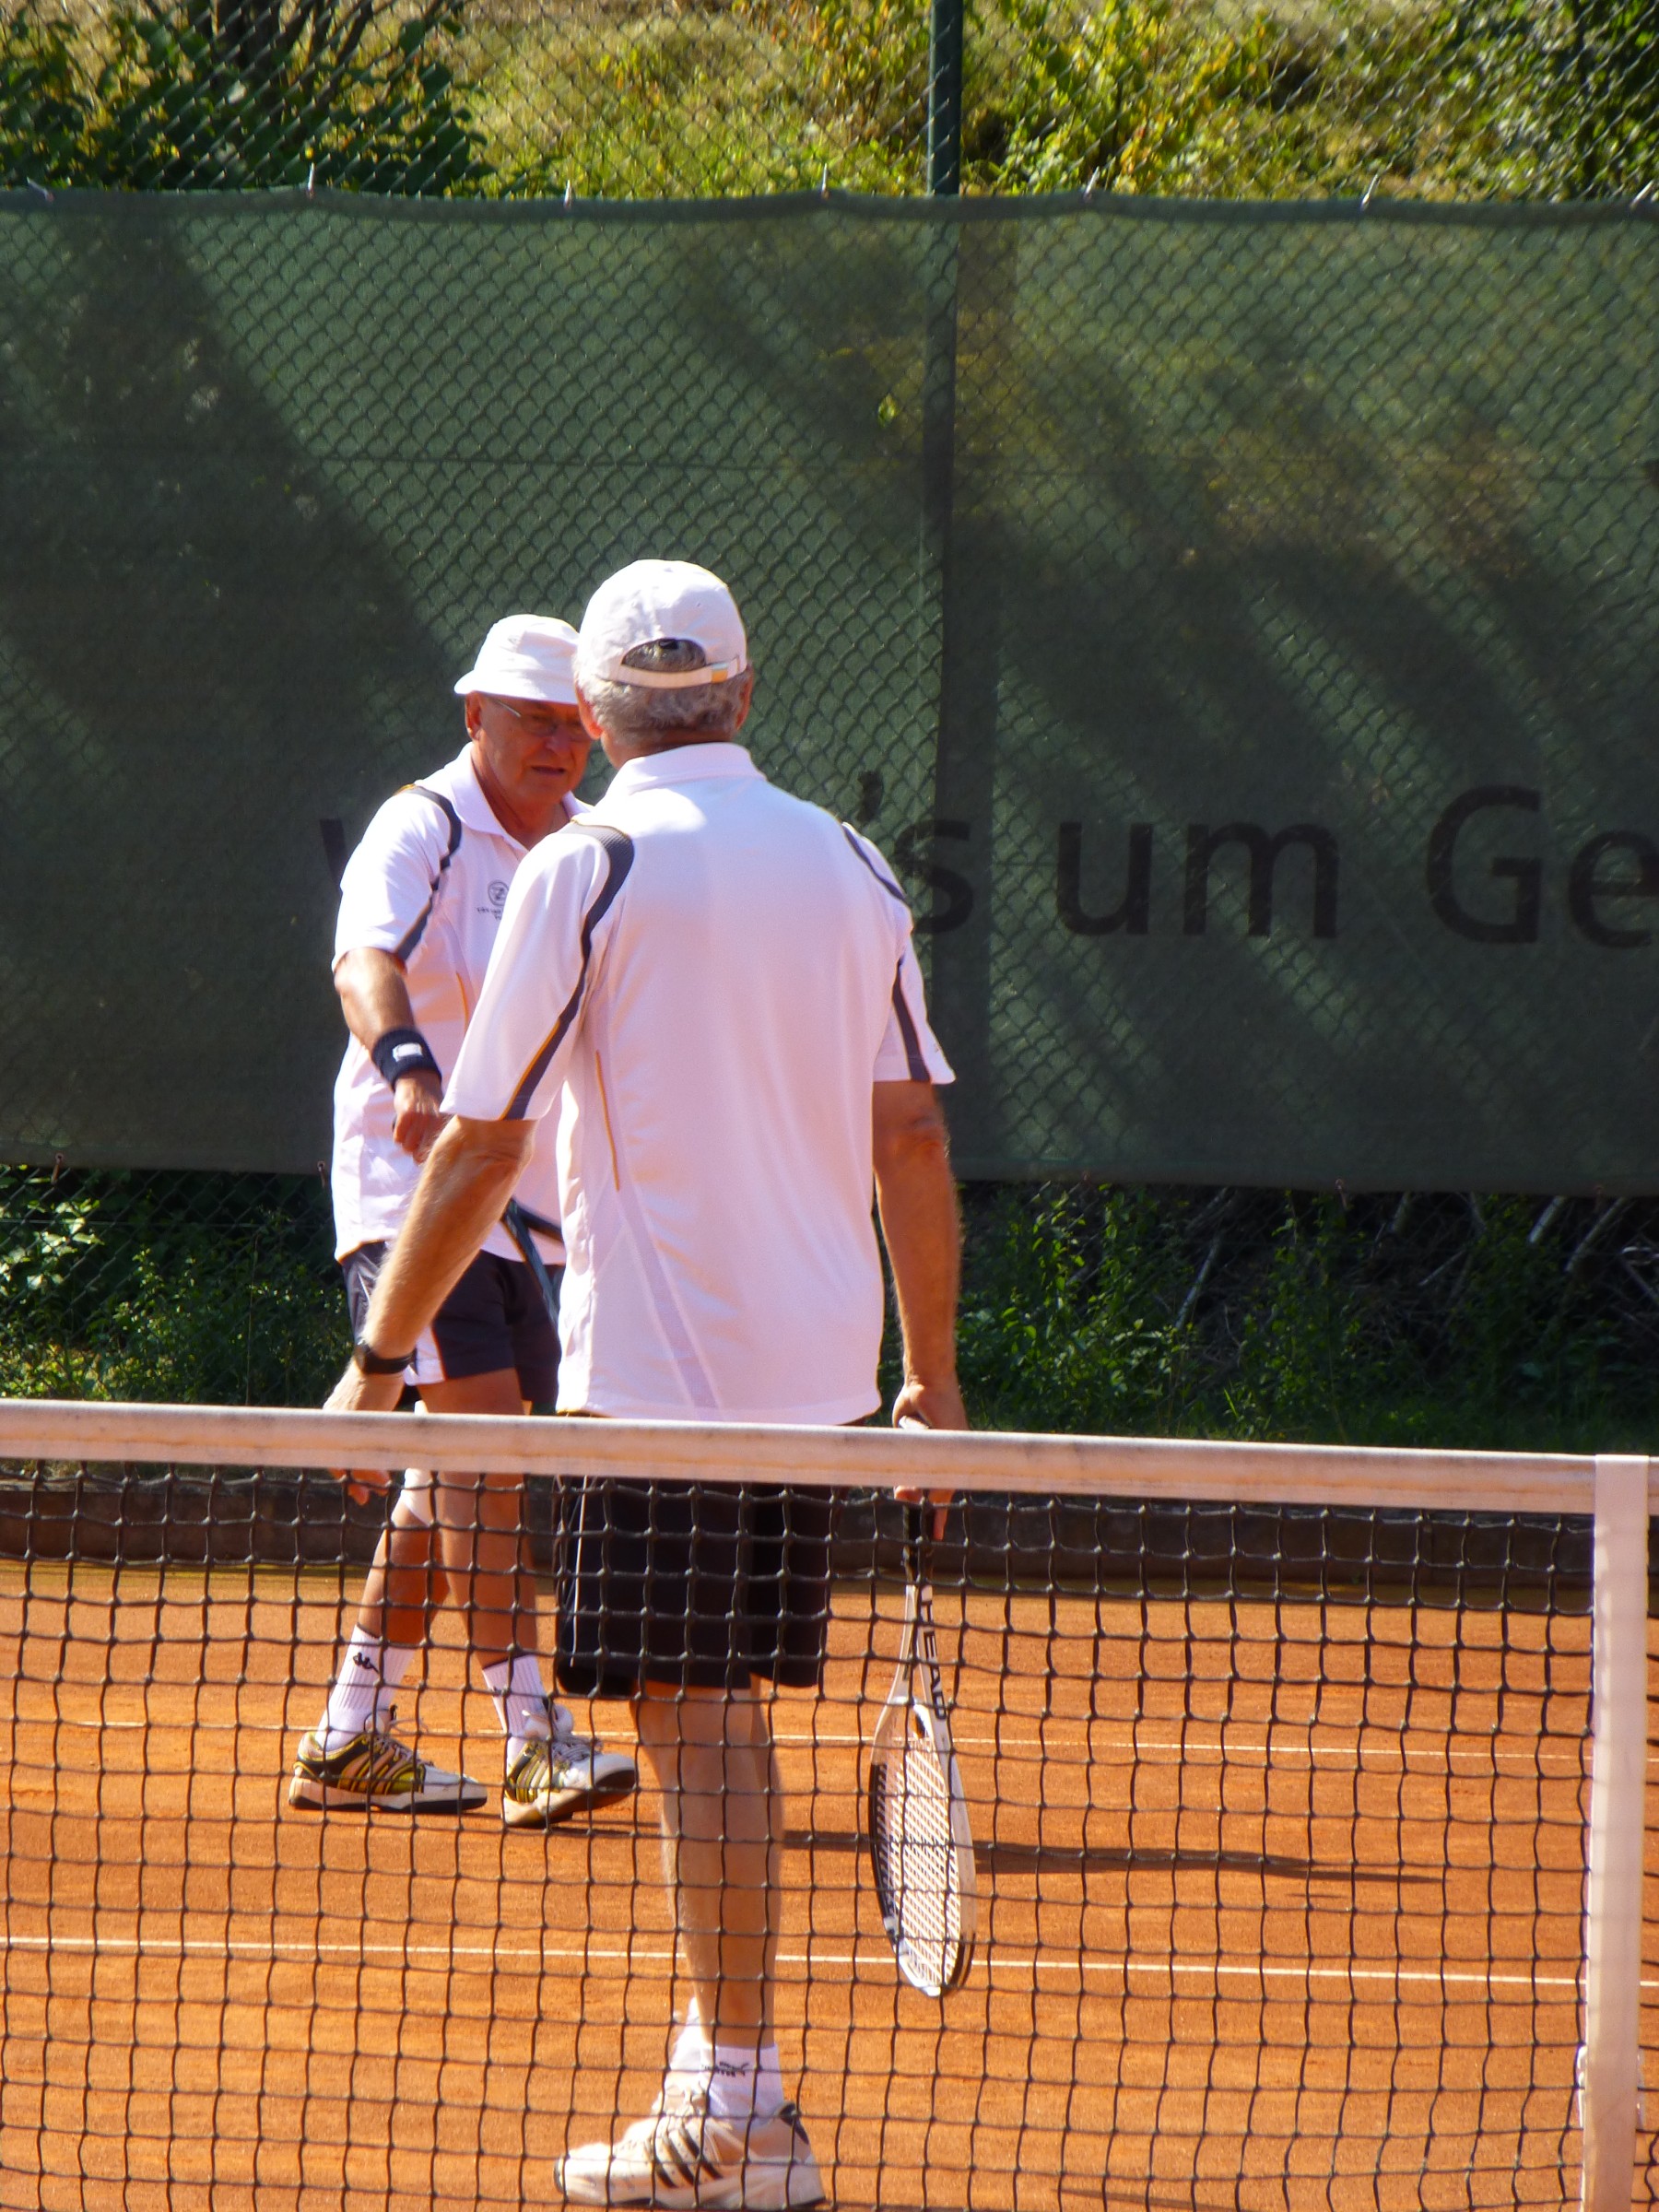 Aschn-Tenis 2013 026